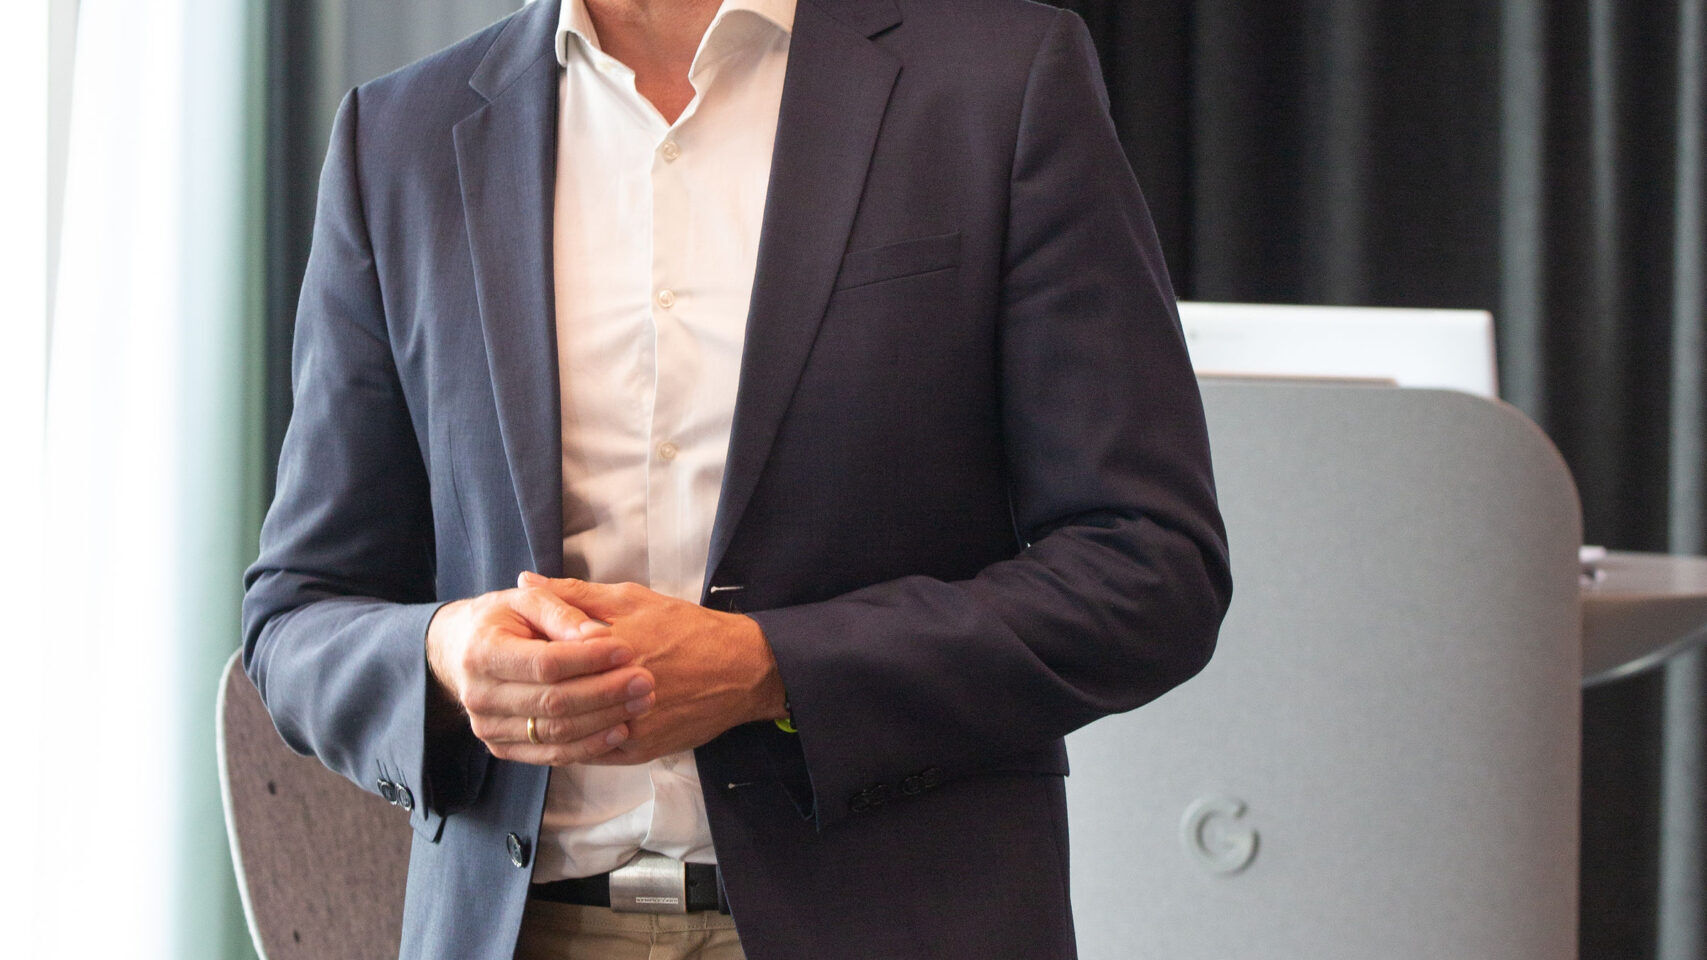 Andreas Briese, dyrektor krajowy YouTube w Niemczech i dyrektor regionalny na Europę Środkową, wzięli udział w oficjalnej inauguracji nowego kampusu Google Europaallee w Zurychu 27 czerwca 2022 r.